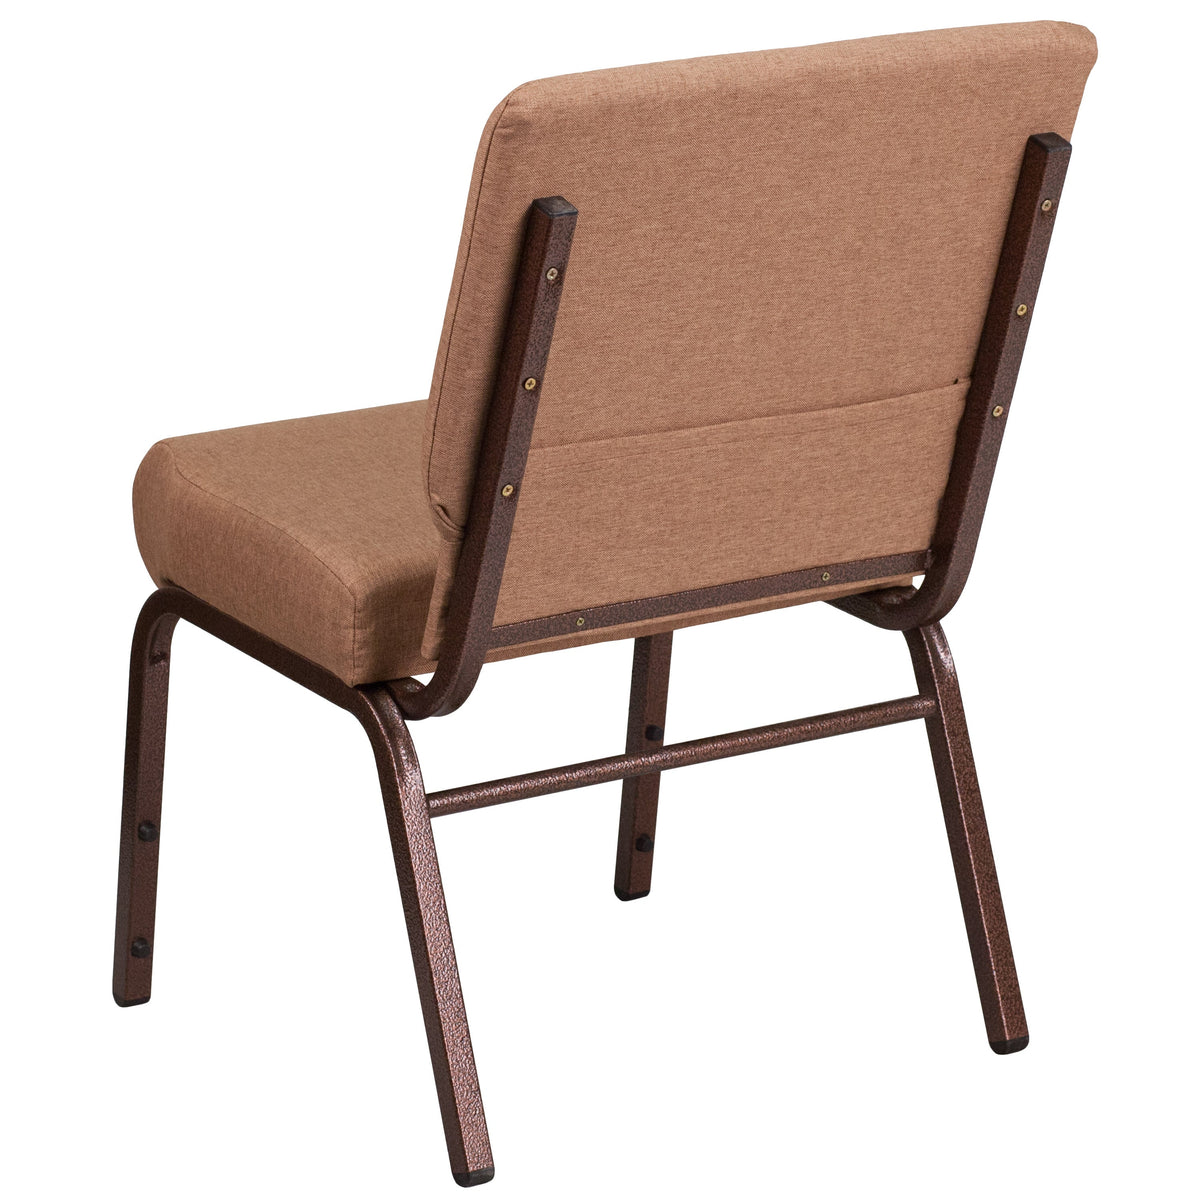 Caramel Fabric/Copper Vein Frame |#| 21inchW Stacking Church Chair in Caramel Fabric - Copper Vein Frame